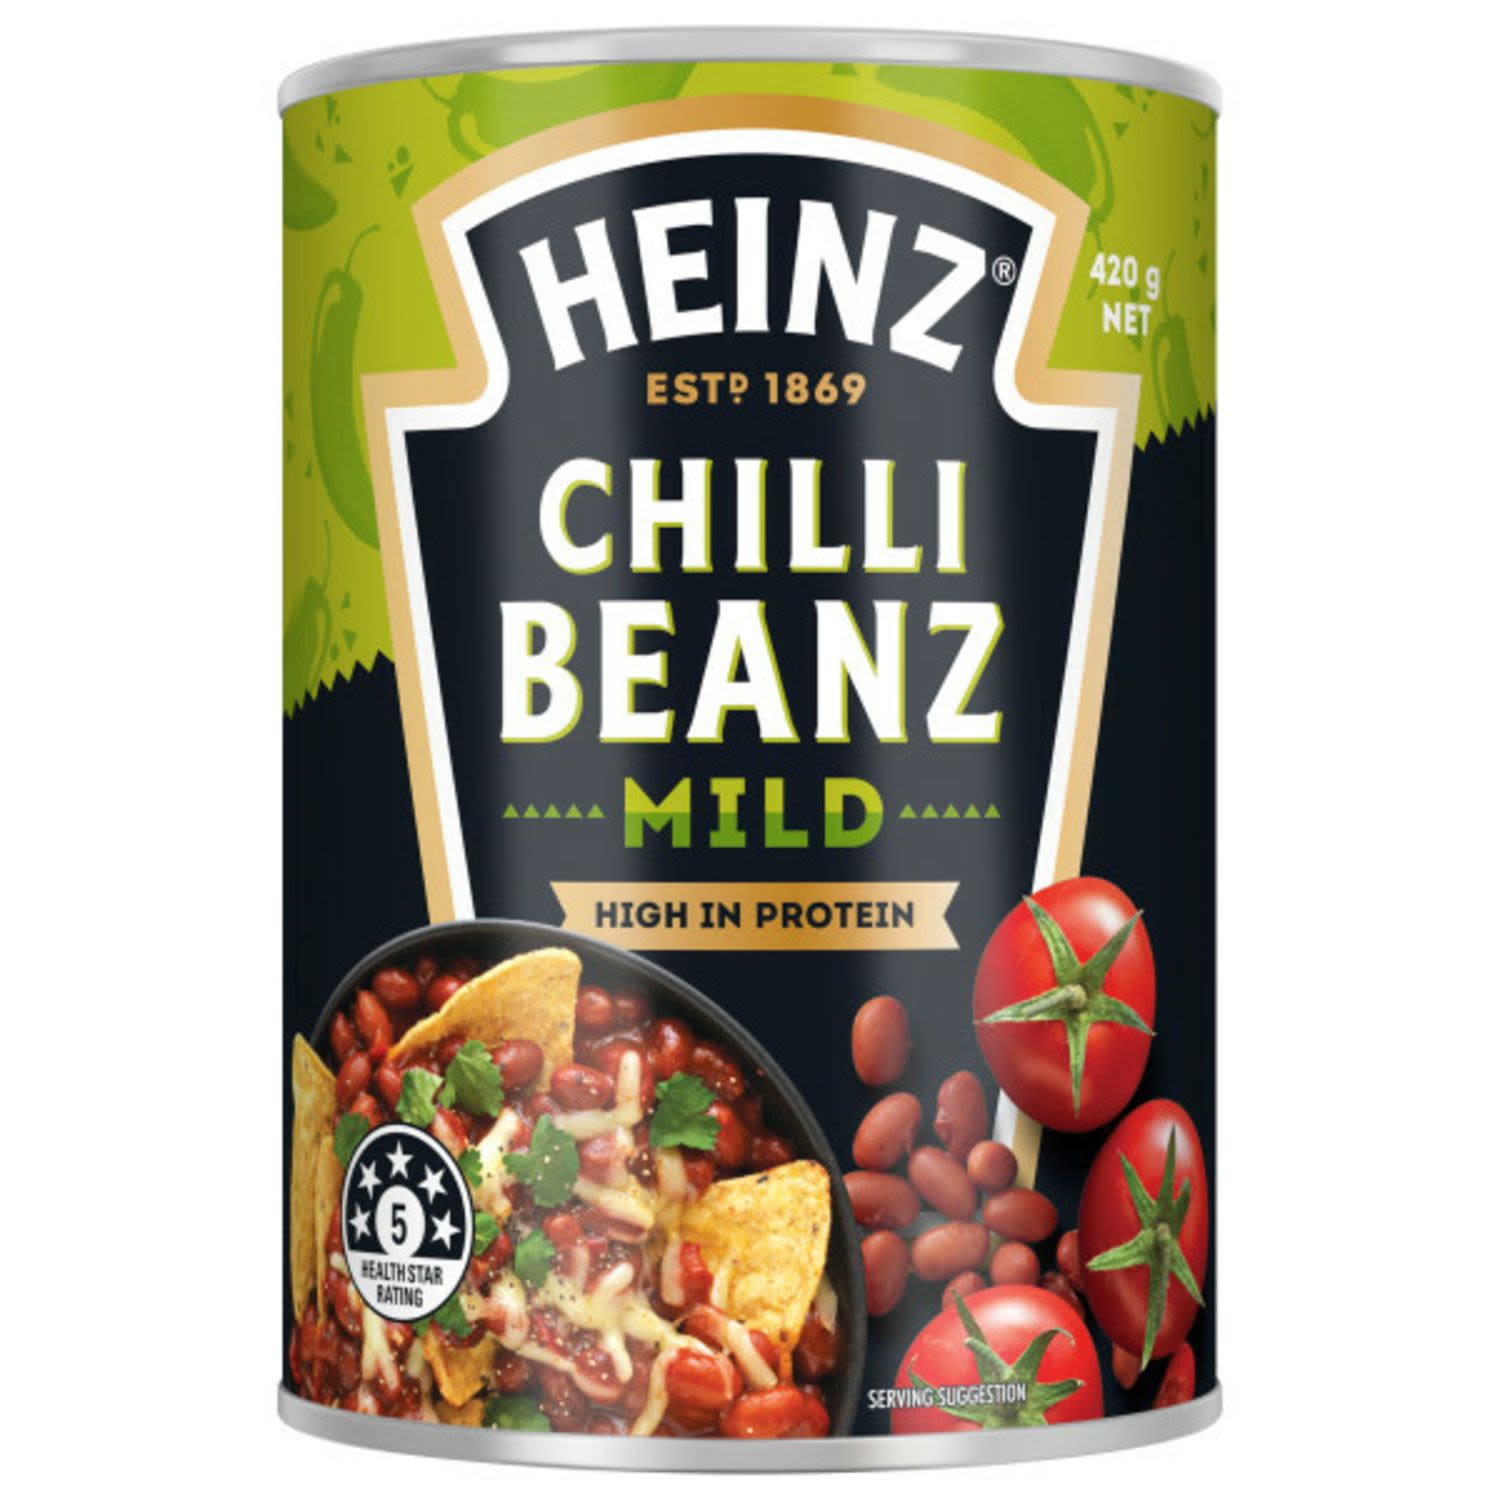 Heinz Mexican Chilli Beanz Mild, 420 Gram